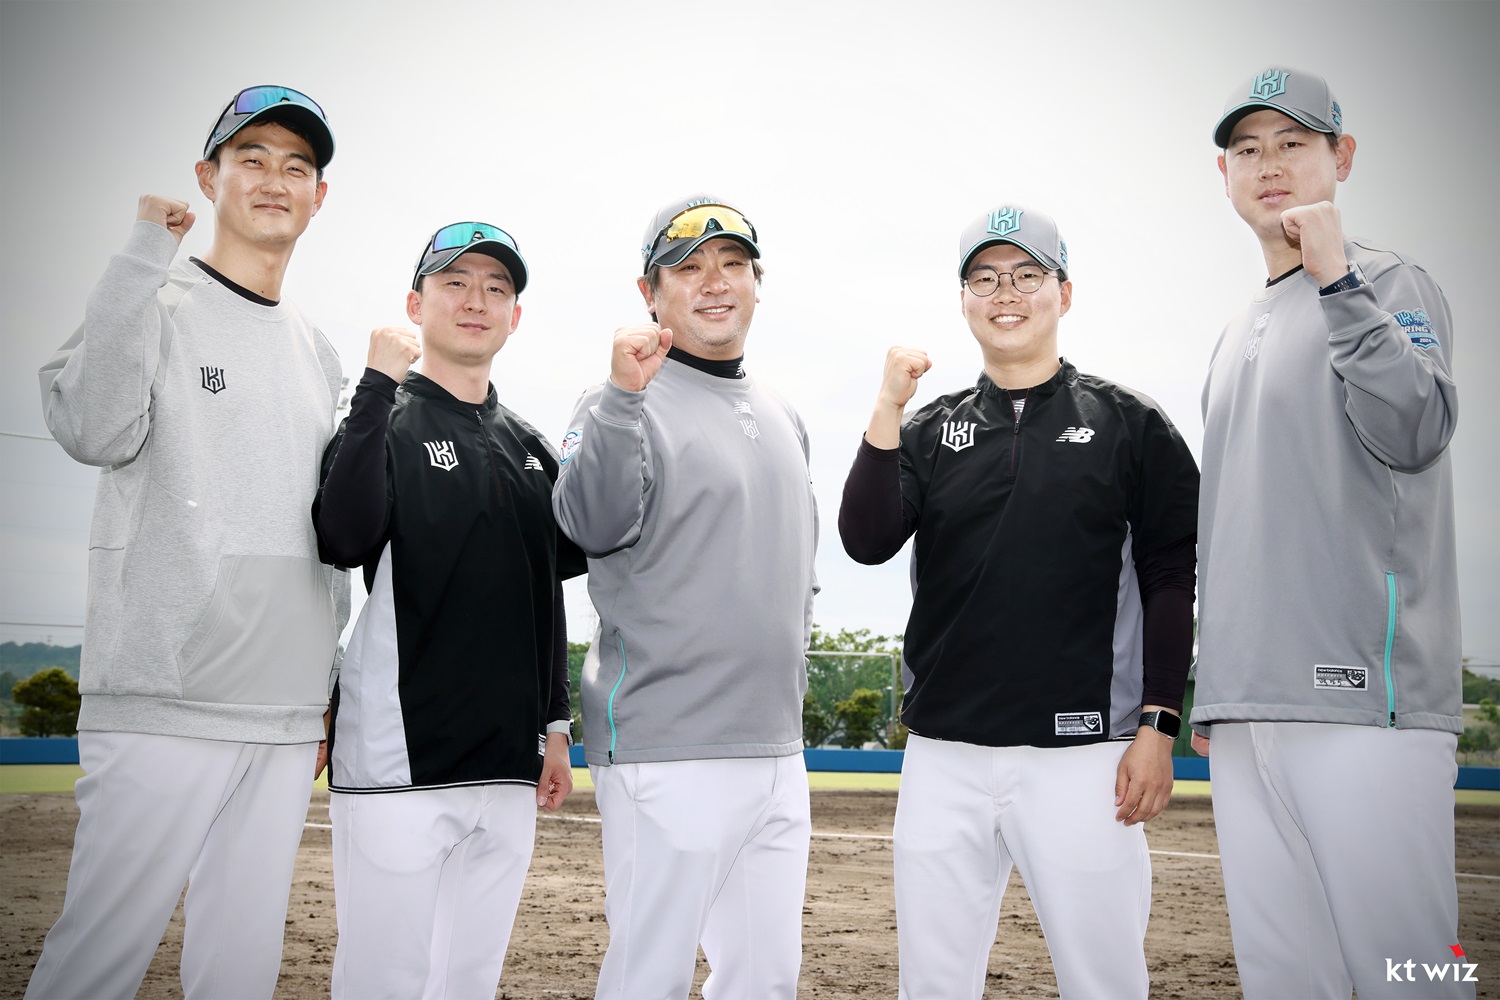 왼쪽부터 KT 위즈 이진호, 박민, 구자욱, 강권민, 백경도 트레이너. KT 위즈 제공 